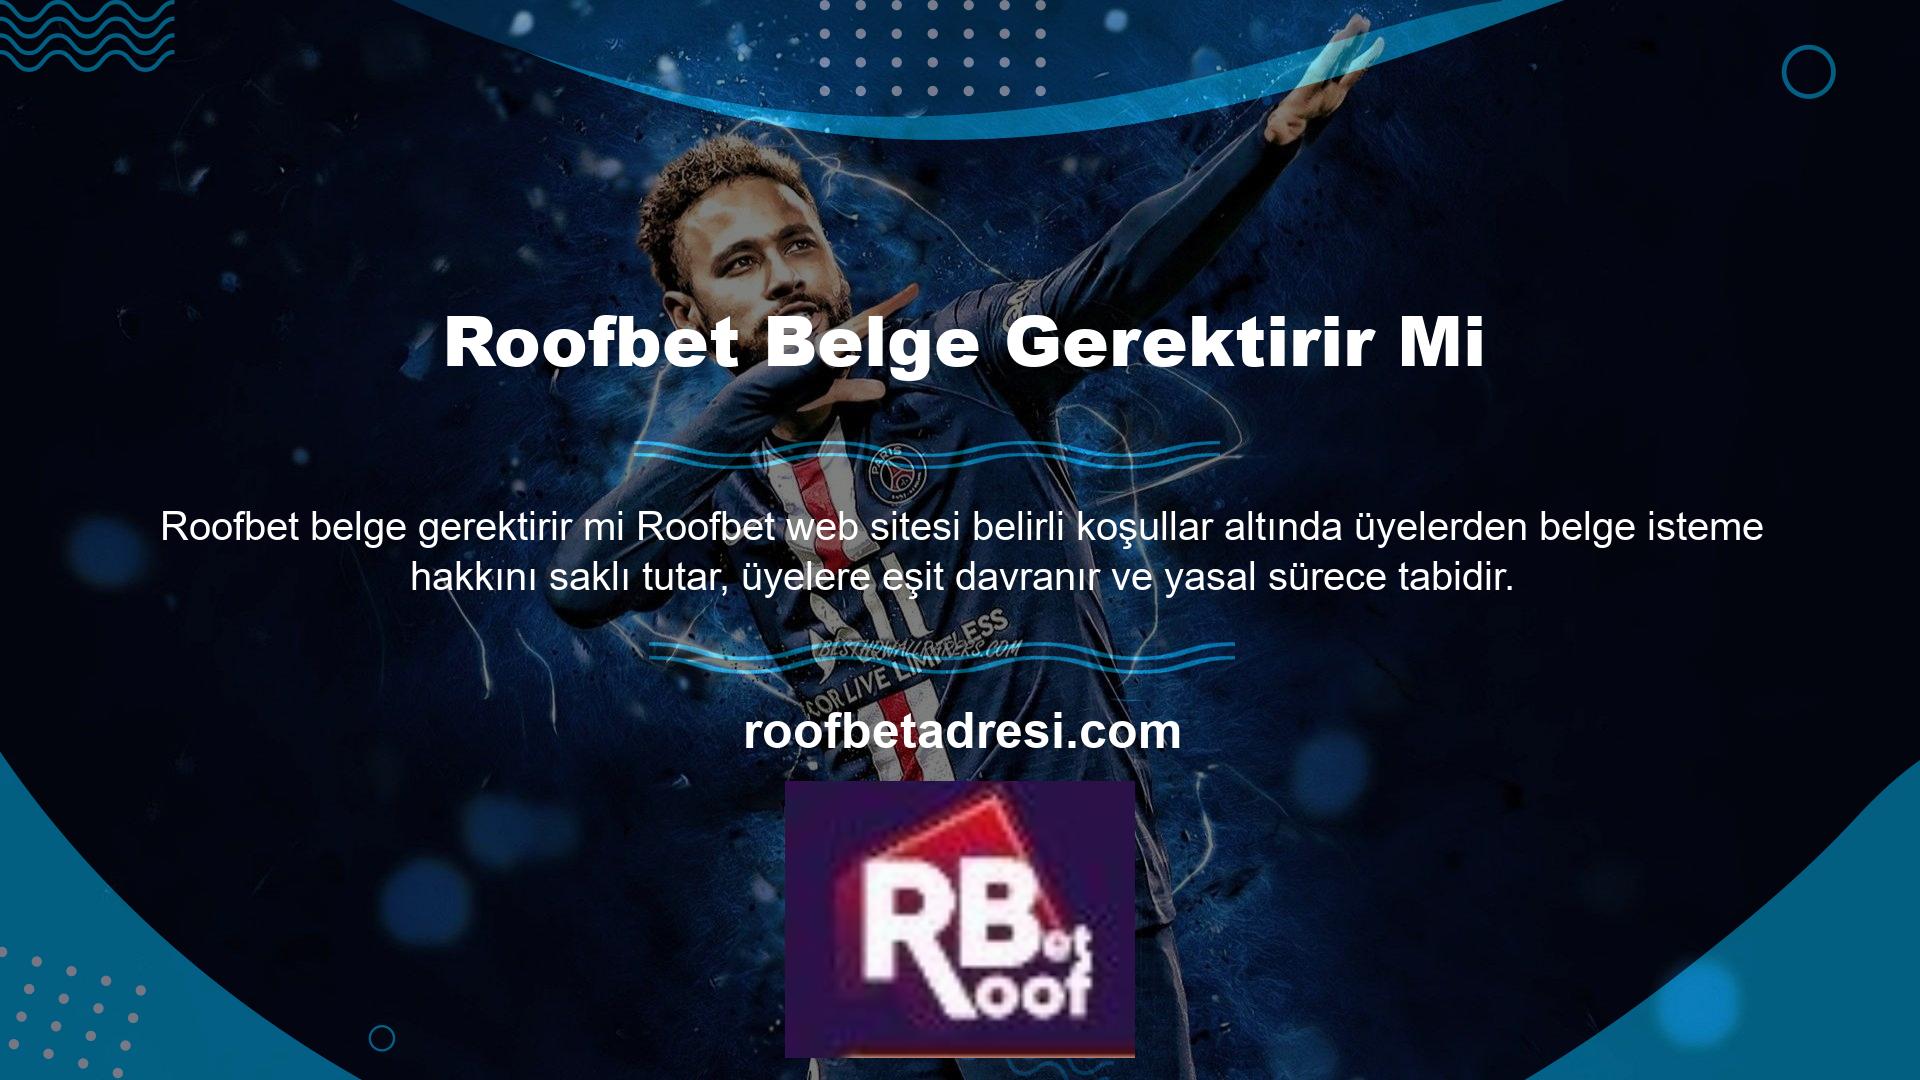 Roofbet web sitesi belirli koşullar altında üyelerden belge talep etme hakkını saklı tutar